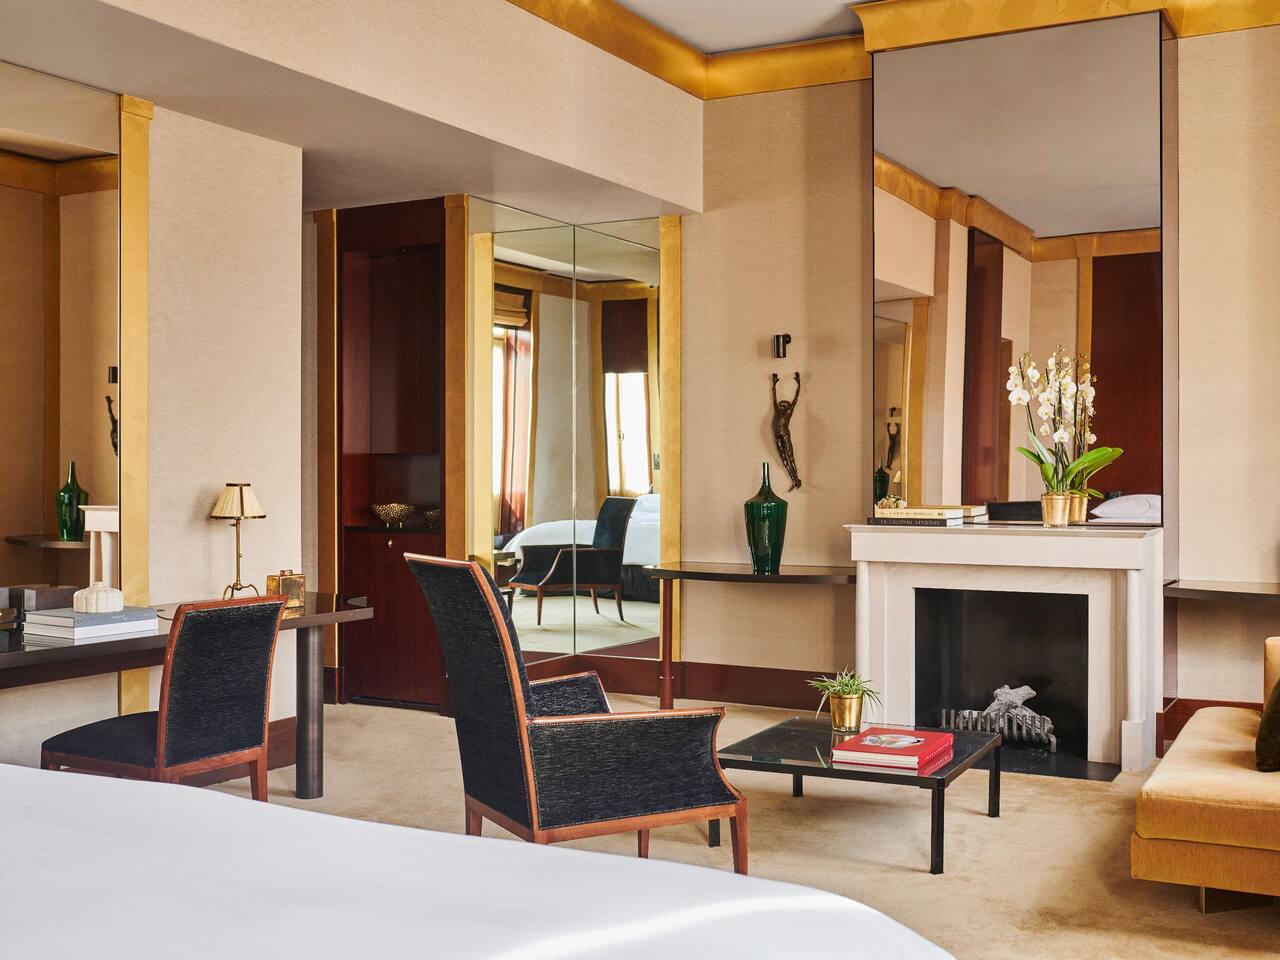 Park Executive Suite Bedroom at Park Hyatt Paris - Vendôme - Parisian Palace